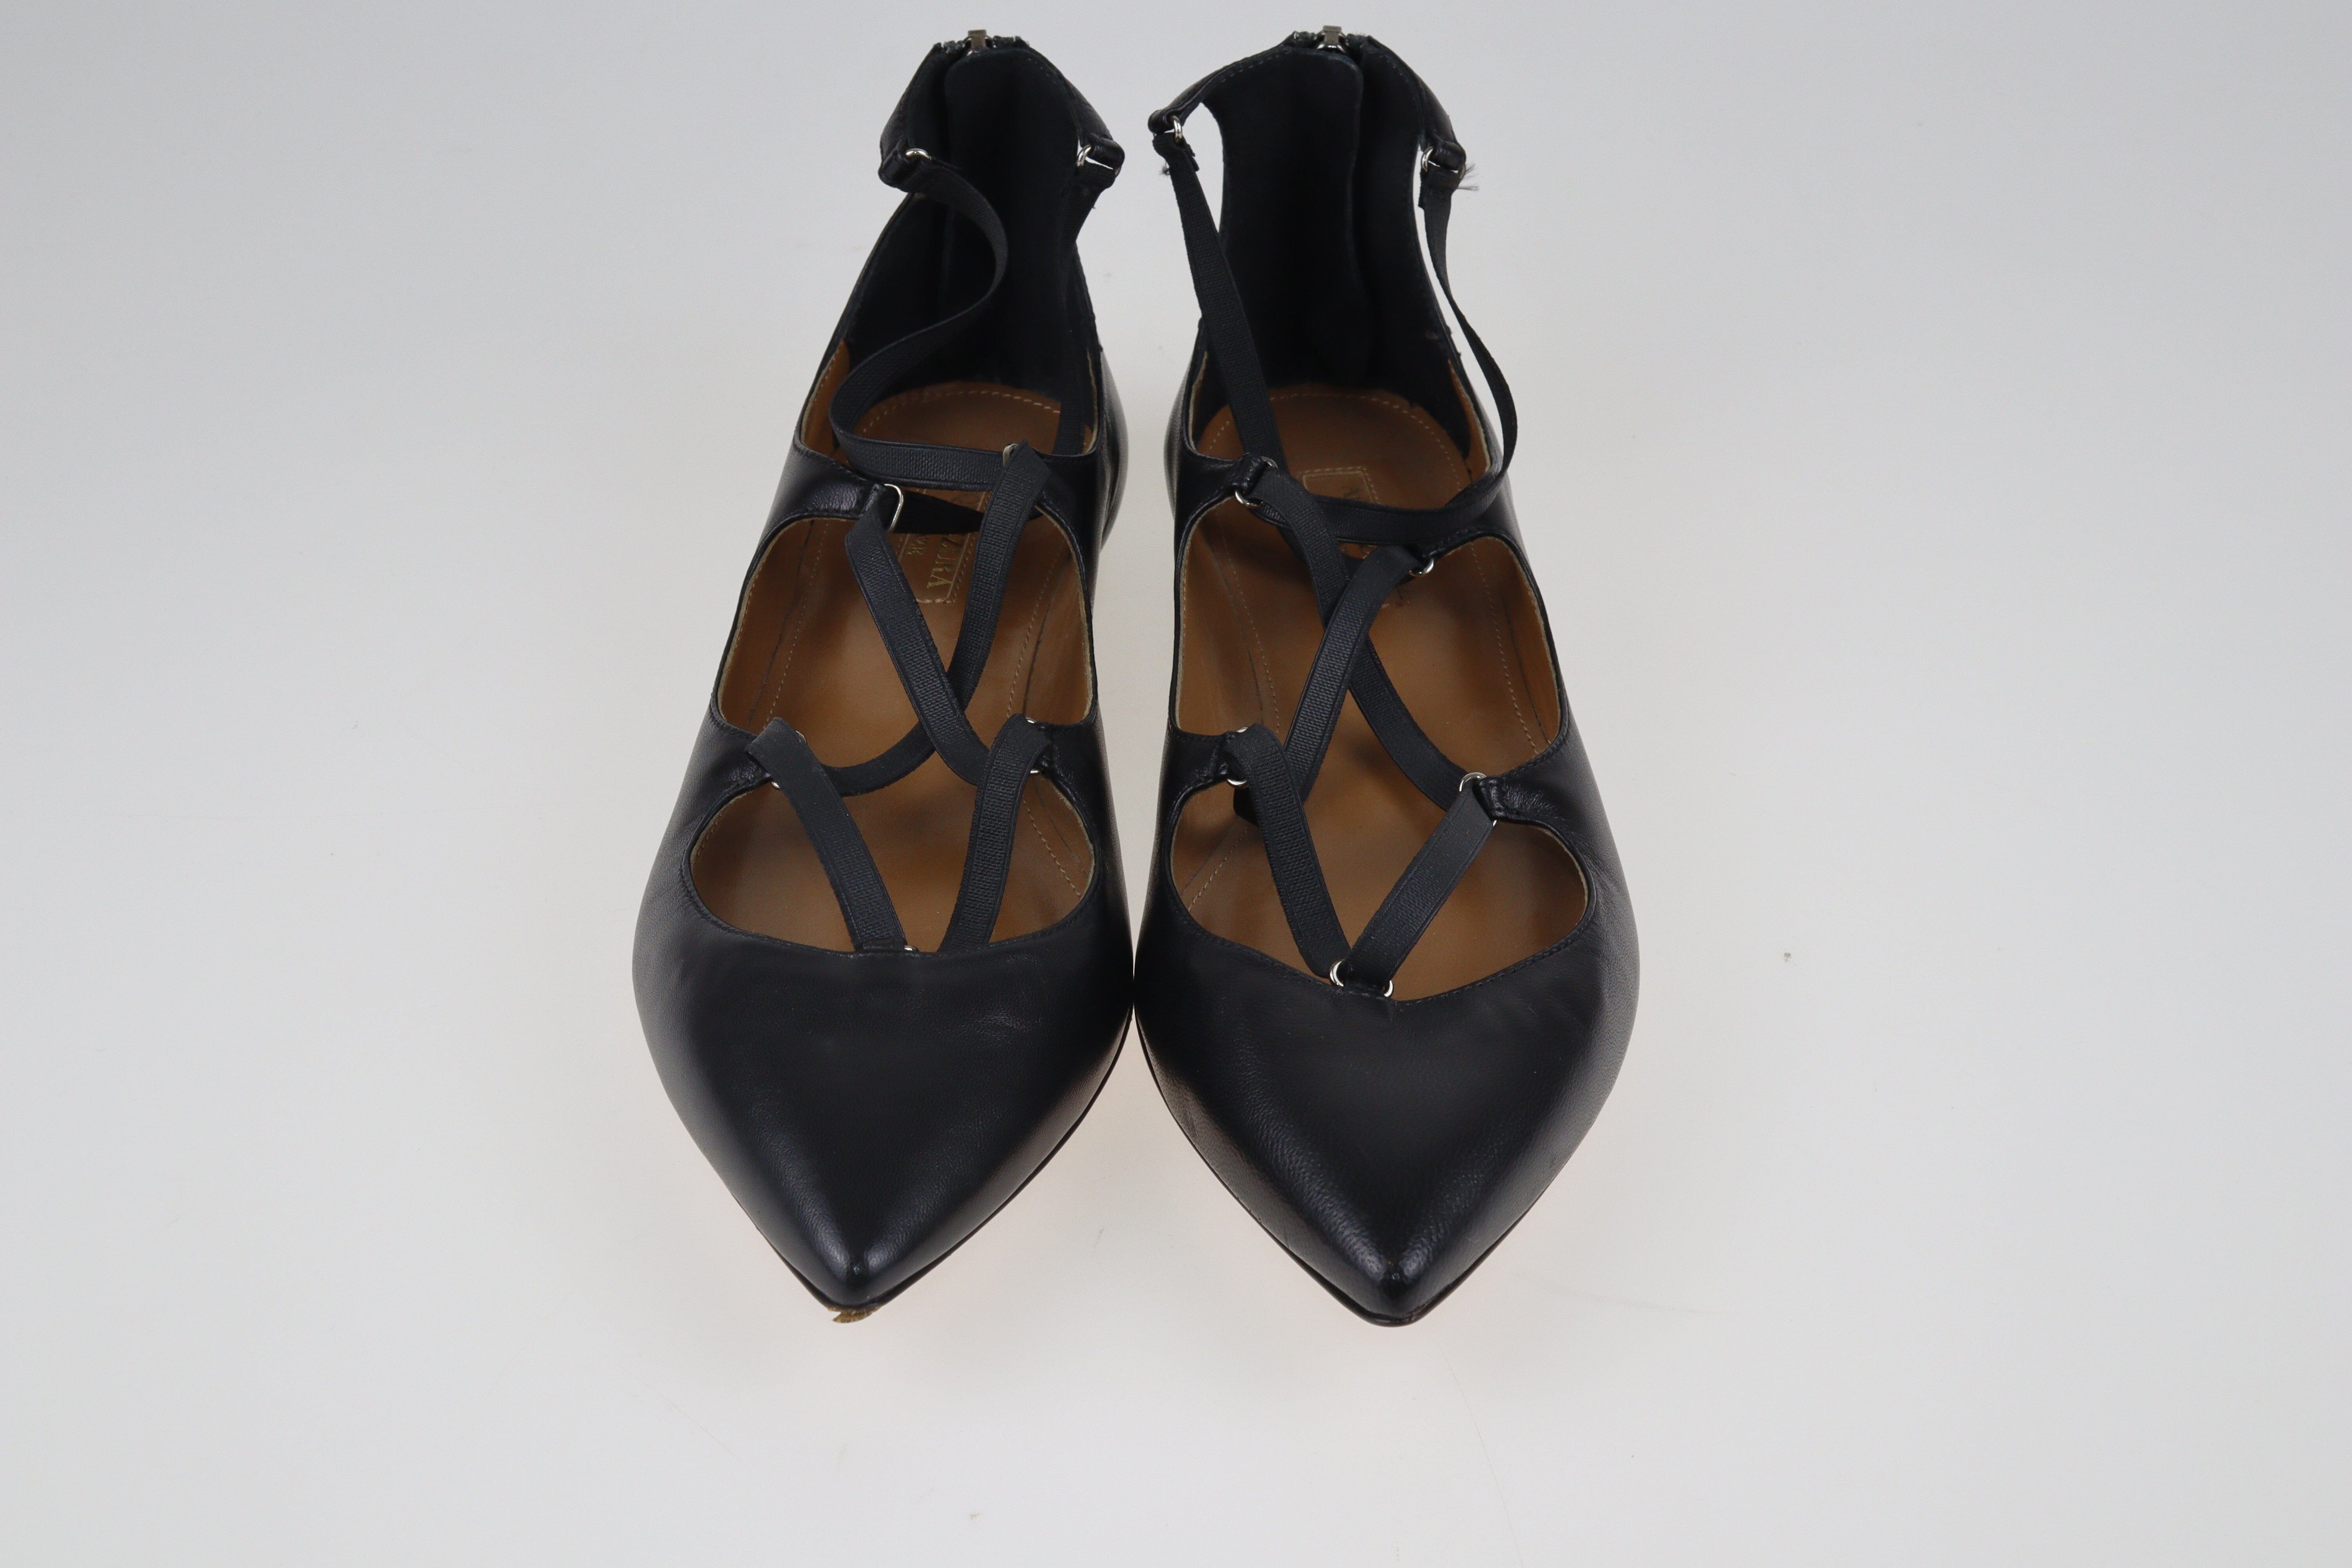 Black Cross Strap Ballet Flats Shoes Aquazzura 